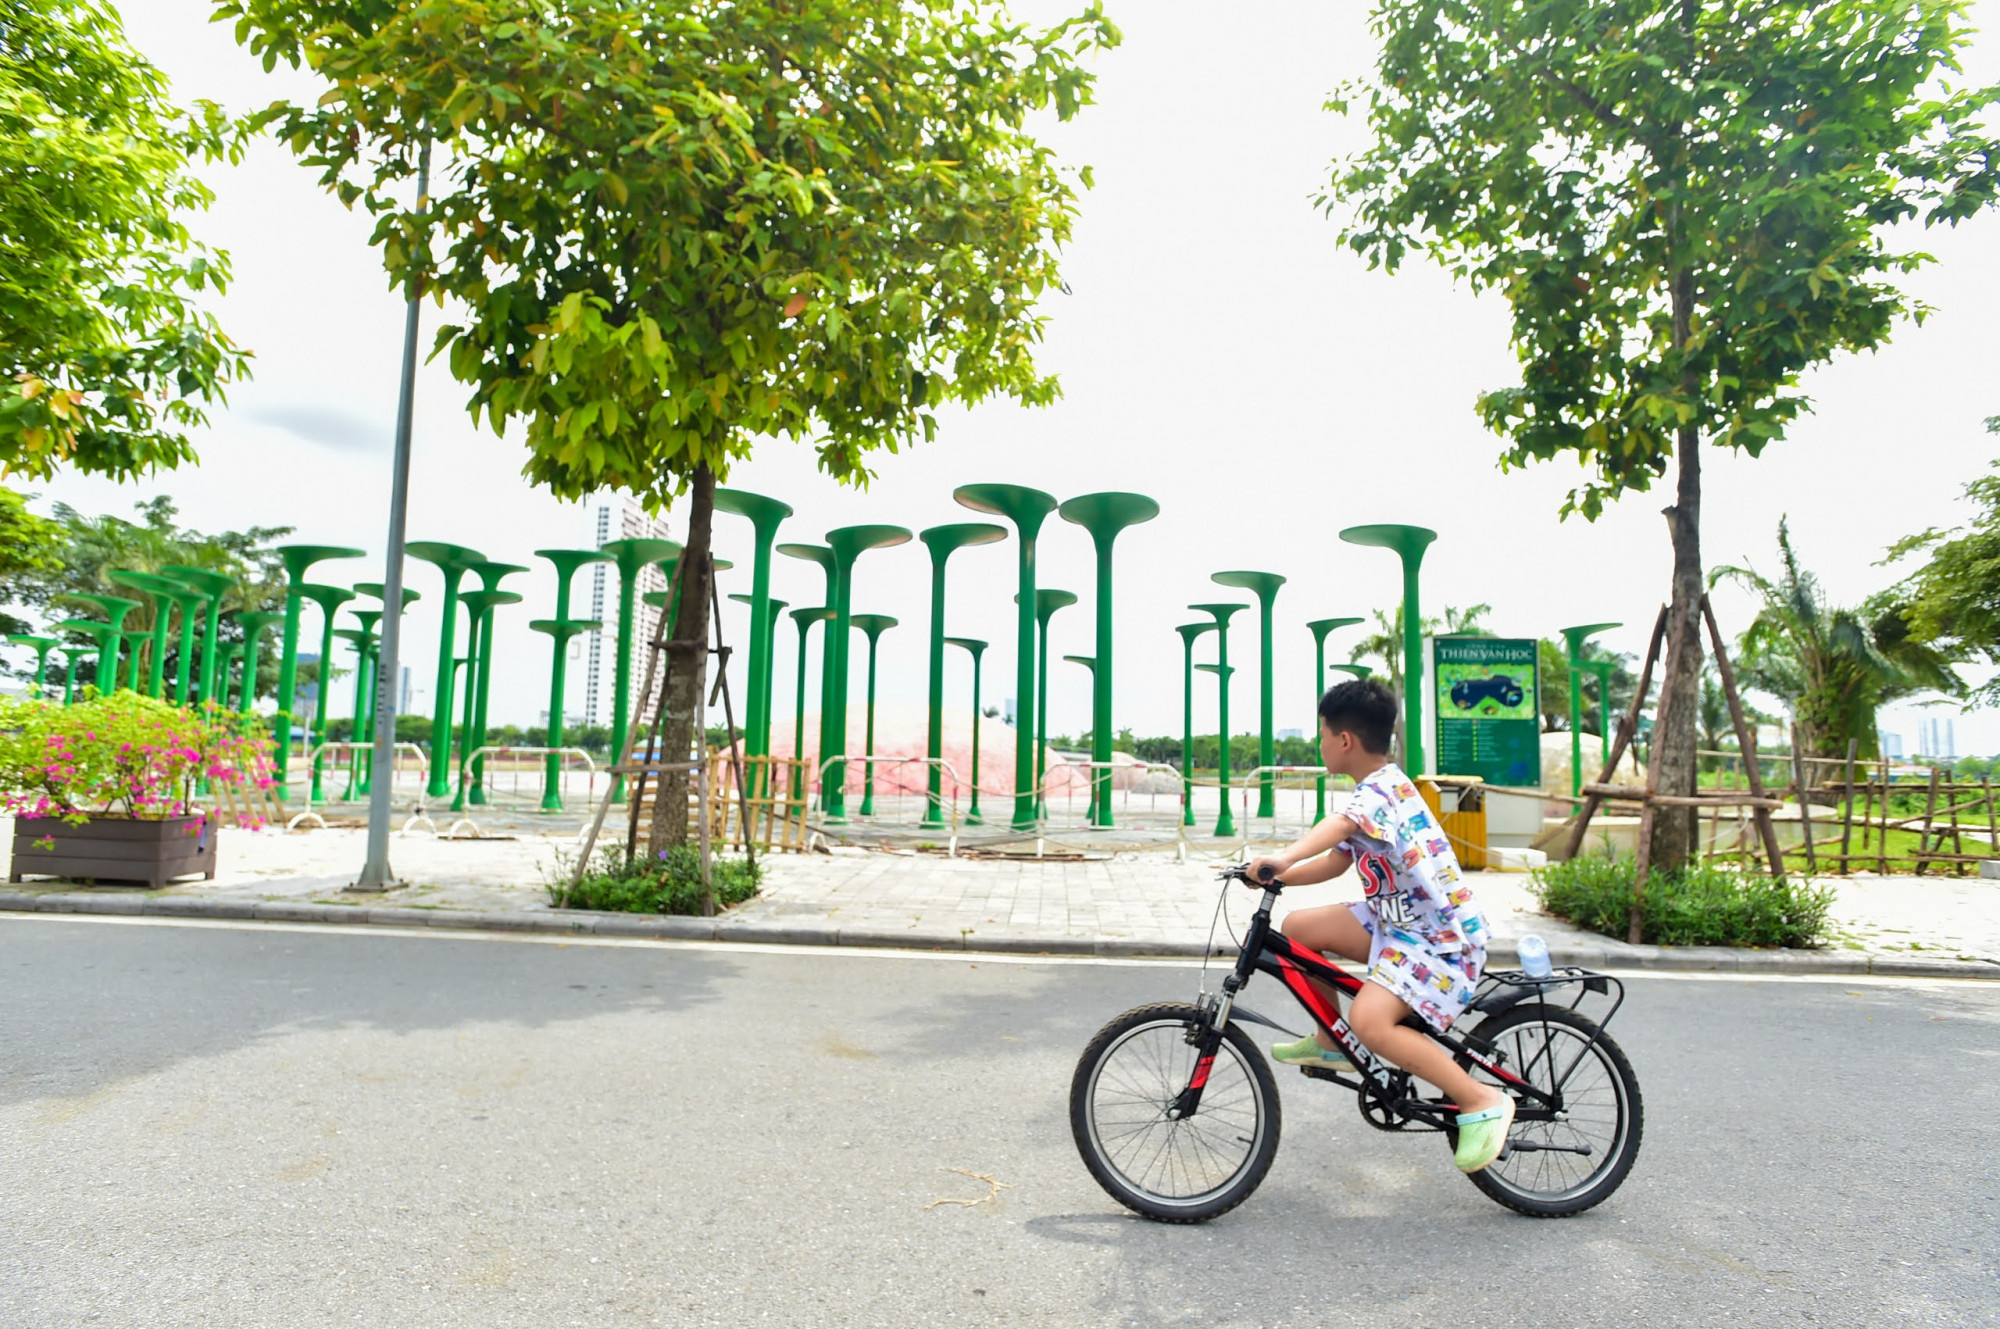 Anh Bạch Hoàng Đạt (cư dân khu đô thị Dương Nội) cho biết: 'Chiều nào tôi cũng cho trẻ con đi tập thể dục quanh đây và cảm thấy rất tiếc khi công viên có nhiều hạng mục thú vị, cung cấp nhiều kiến thức bổ ích nhưng lại bỏ không phí phạm như vậy'.